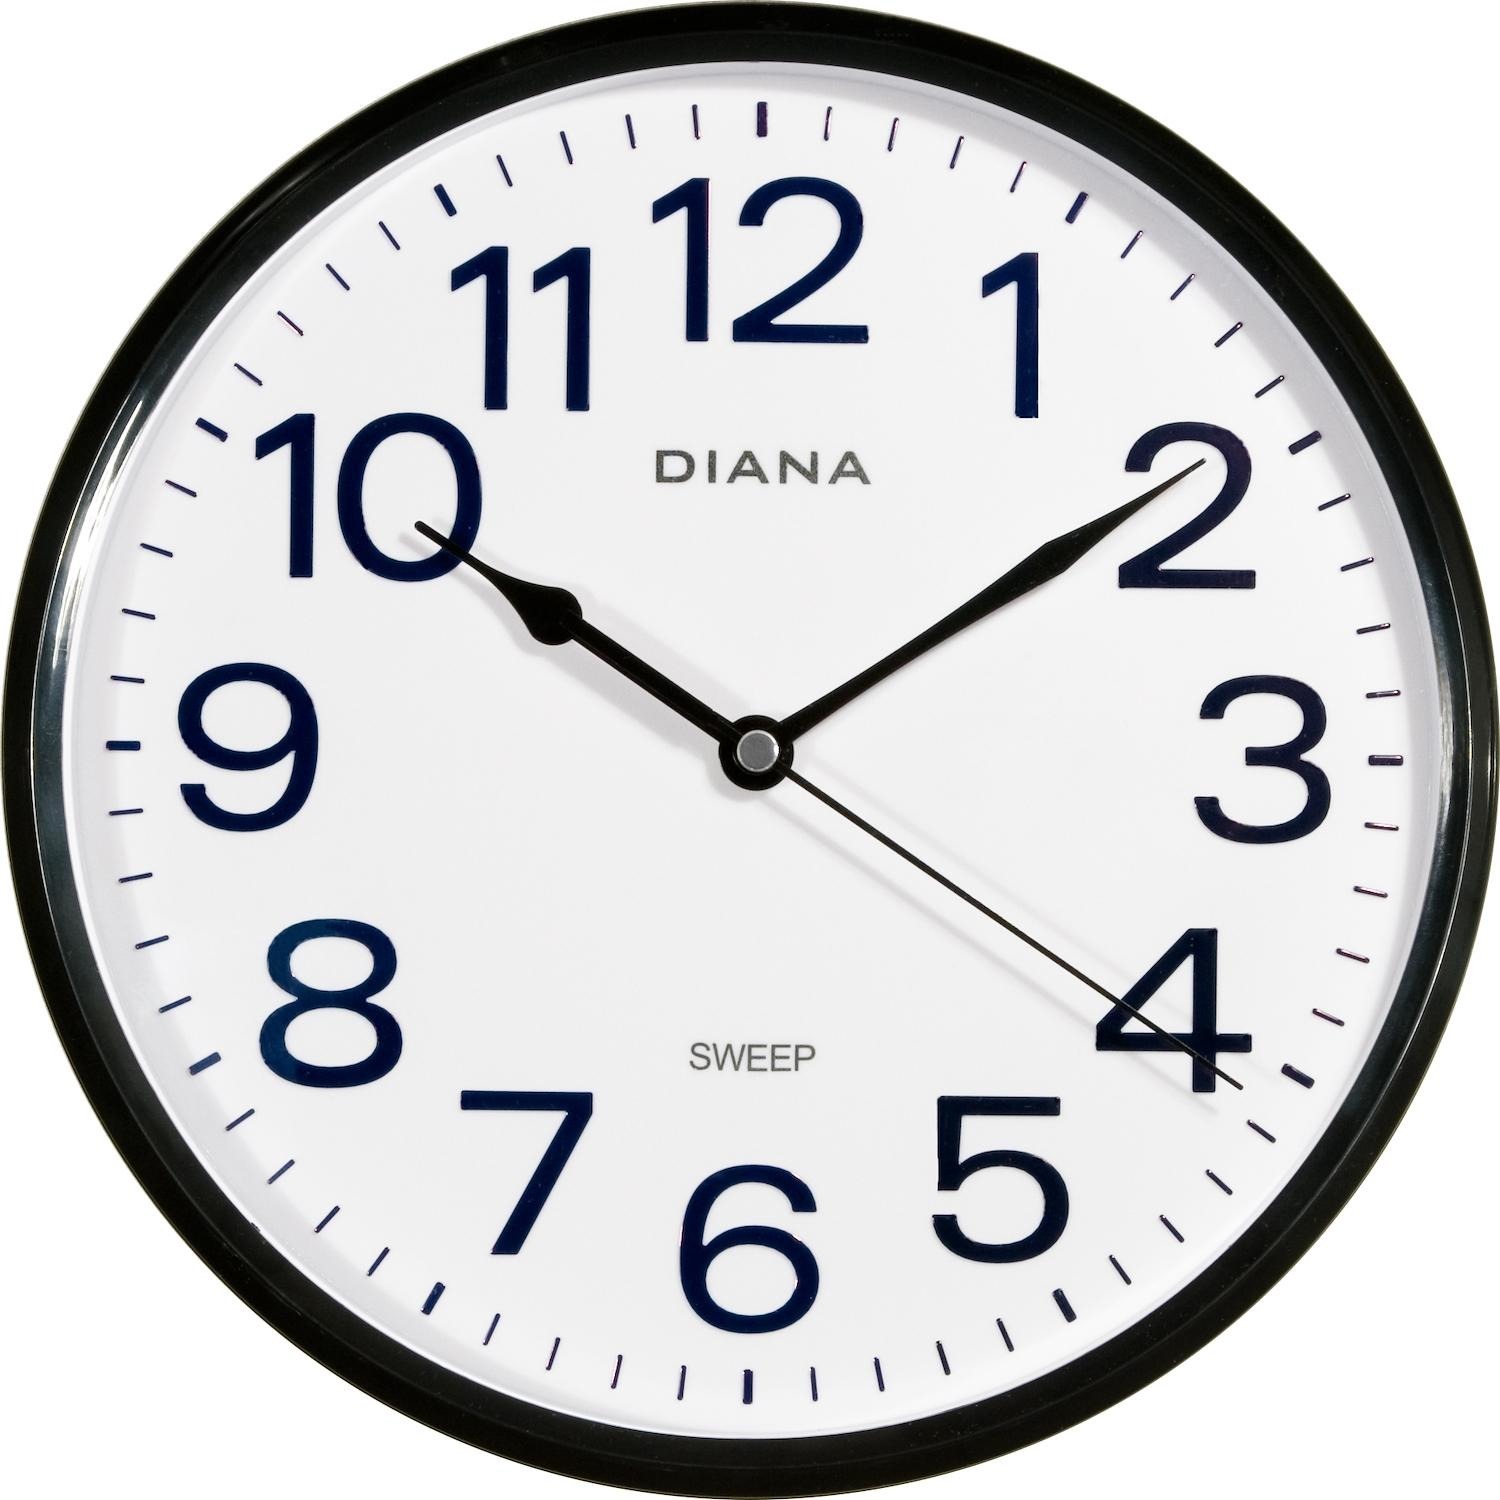 Immagine per Orologio da muro Diana 111739 movimento silenzioso diametro 255mm nero da DIMOStore